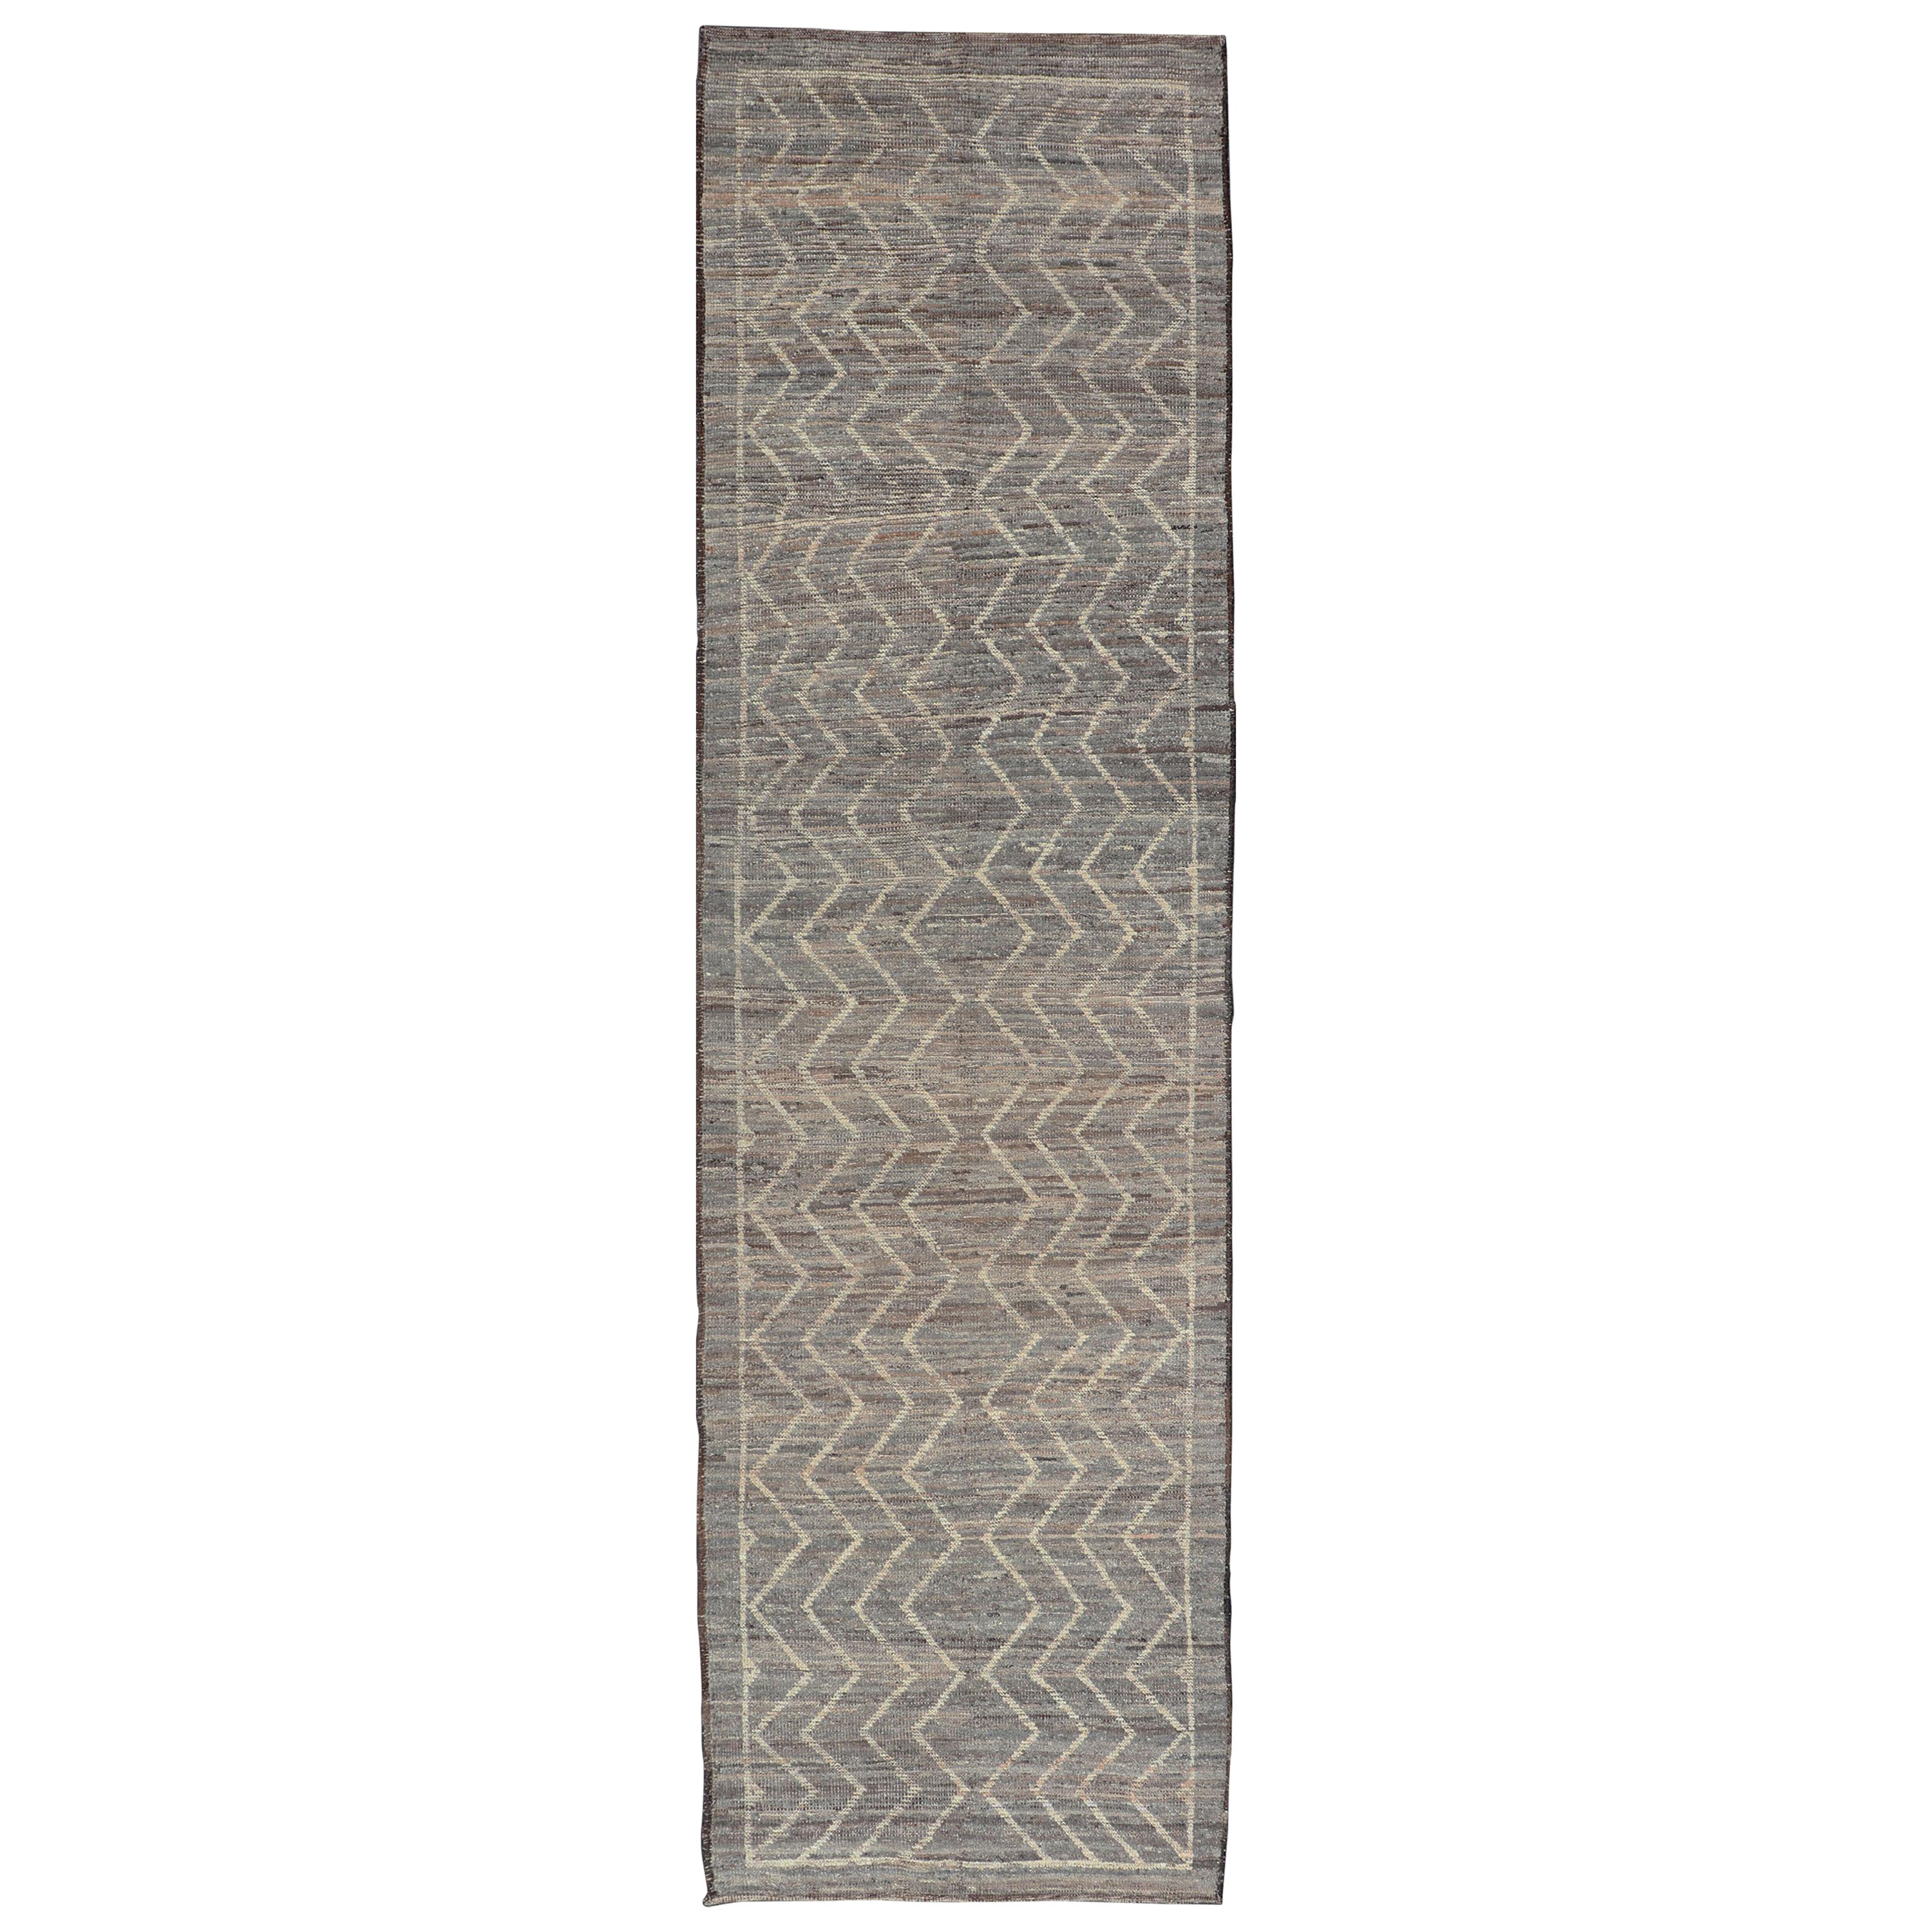 Moderner moderner Teppich mit Stammesmuster in Hellgrau, Taupe, Creme und natürlichen Farben